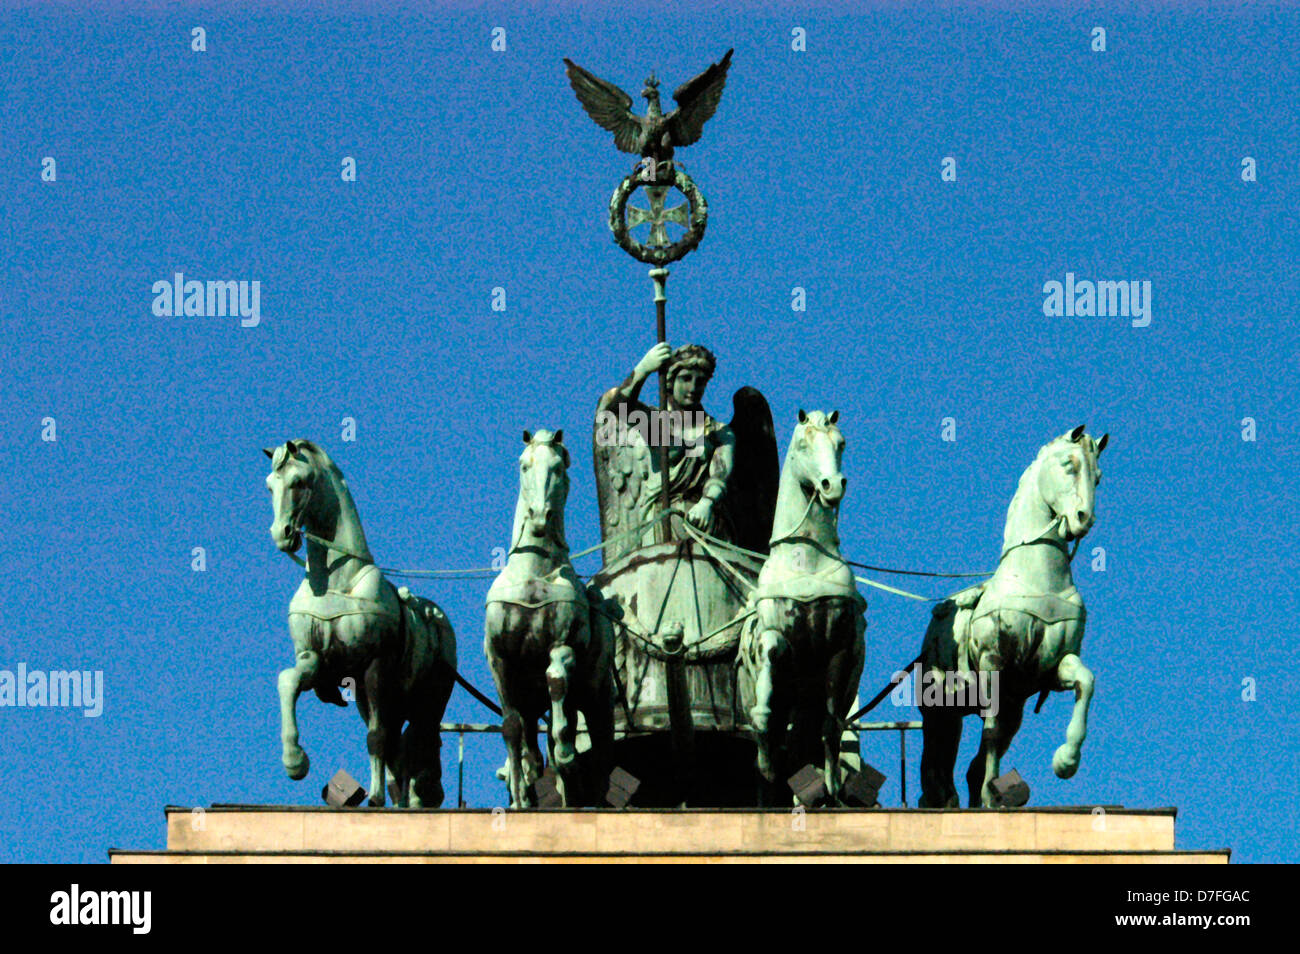 Europe, Germany, Berlin, the Brandenburg Gate, eastern side, quadriga from the front, Brandenburger Tor Stock Photo